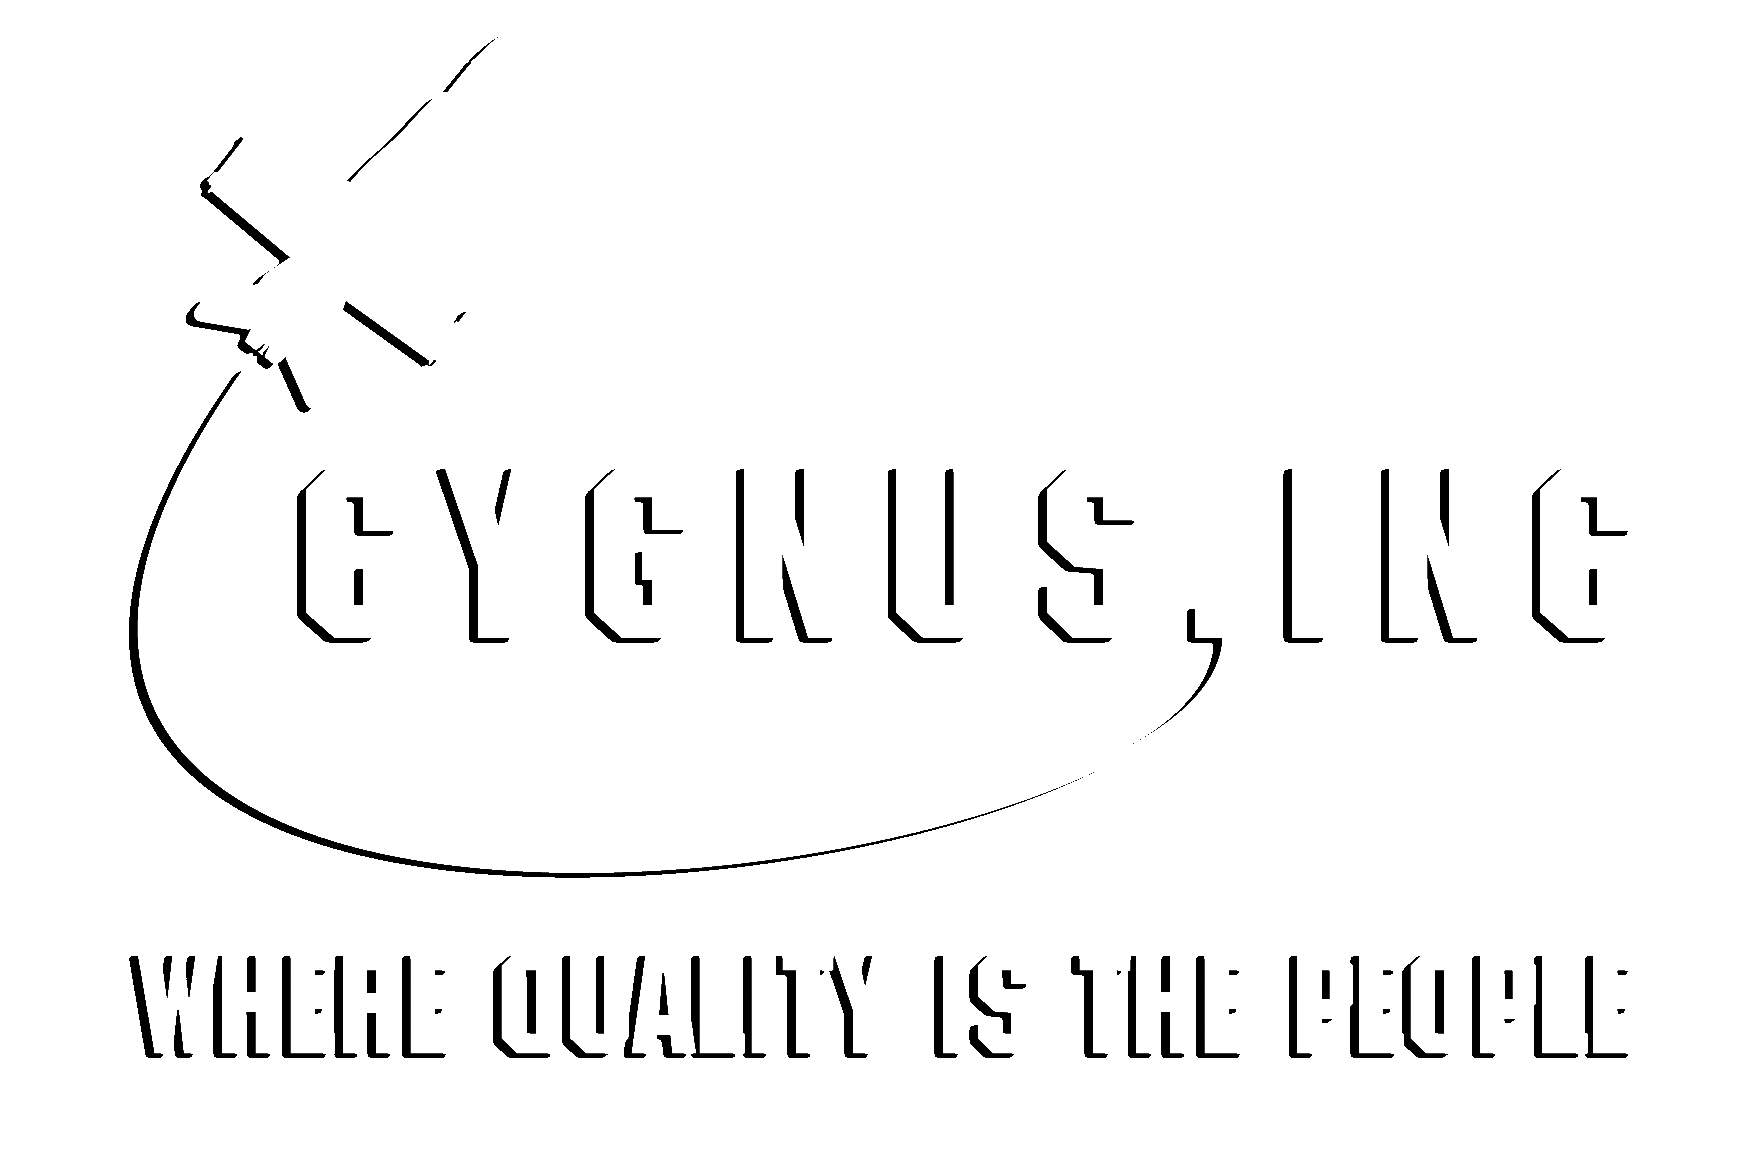 Cygnus, Inc.